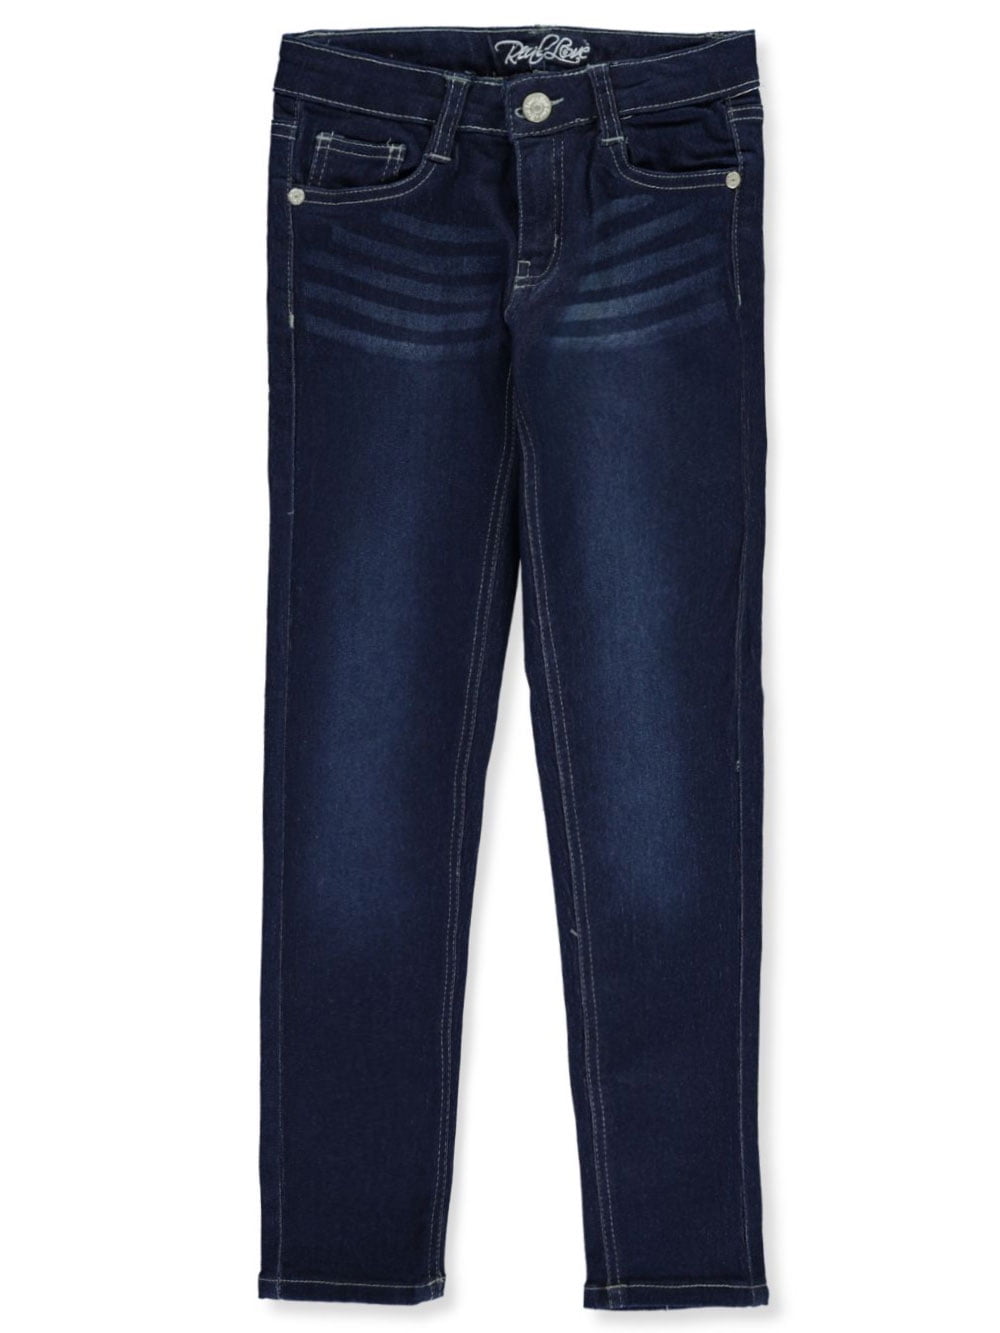 Monfince Girls' Jeggings - Pull On Super Stretch Denim Skinny Jeans for  Girls Black 140cm/4.6ft